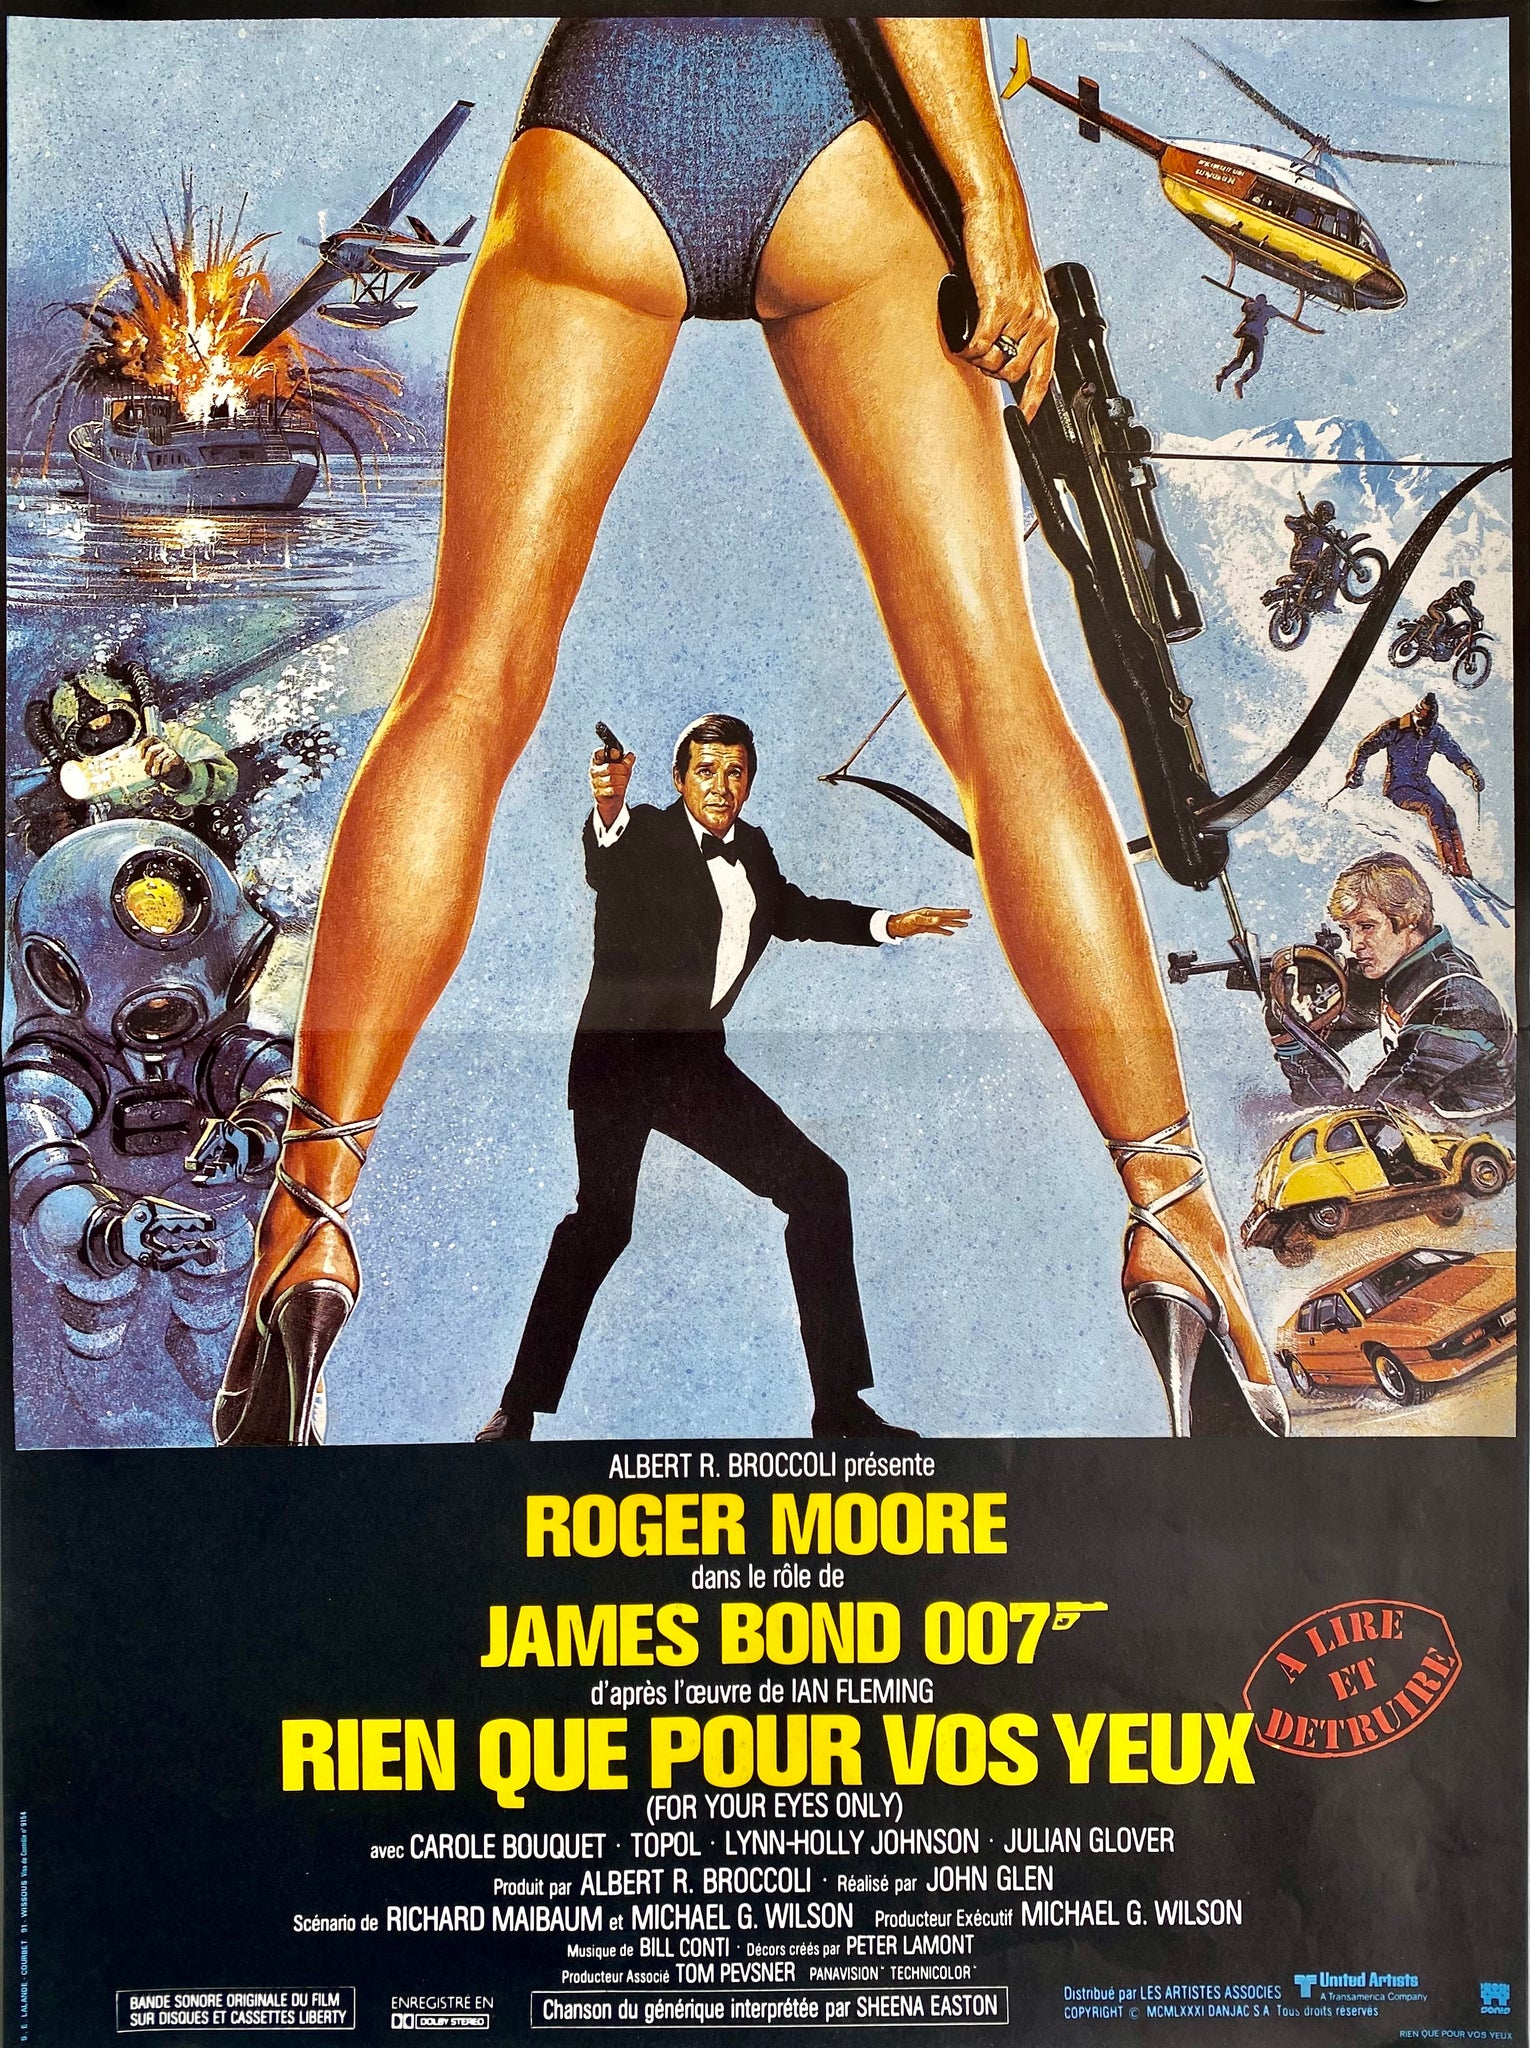 Affiche Cinéma originale James Bond  Rien Que Pour Vos Yeux de 1981. 